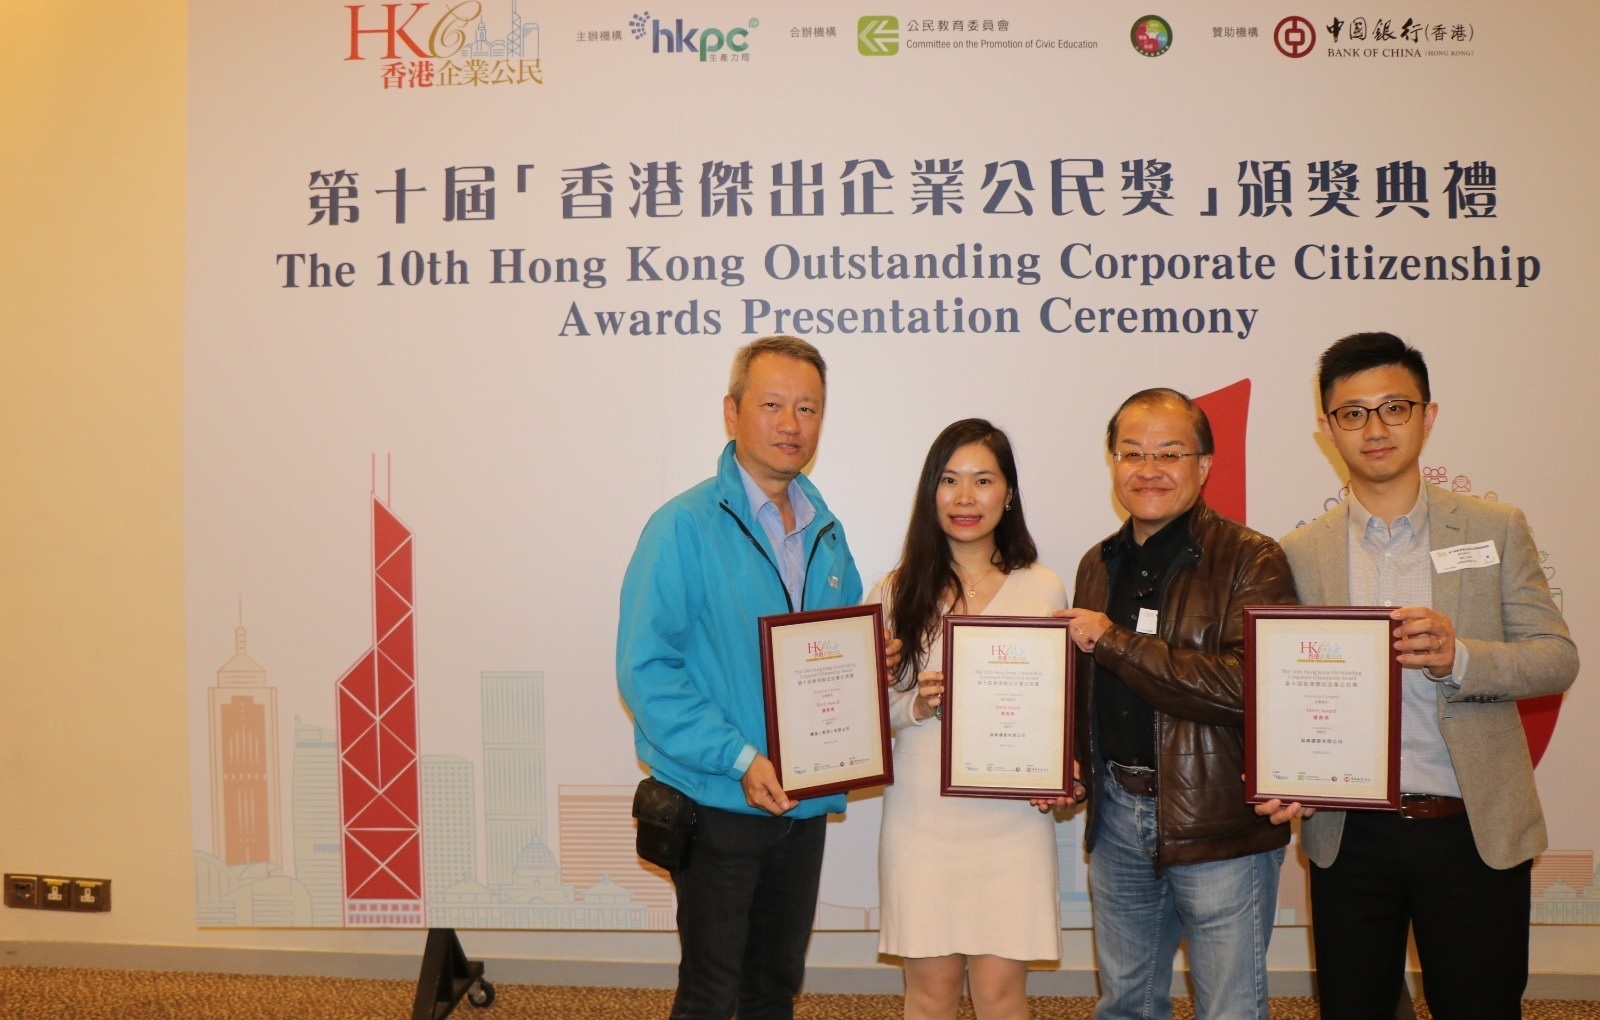 协兴和惠保获颁发香港杰出企业公民奖